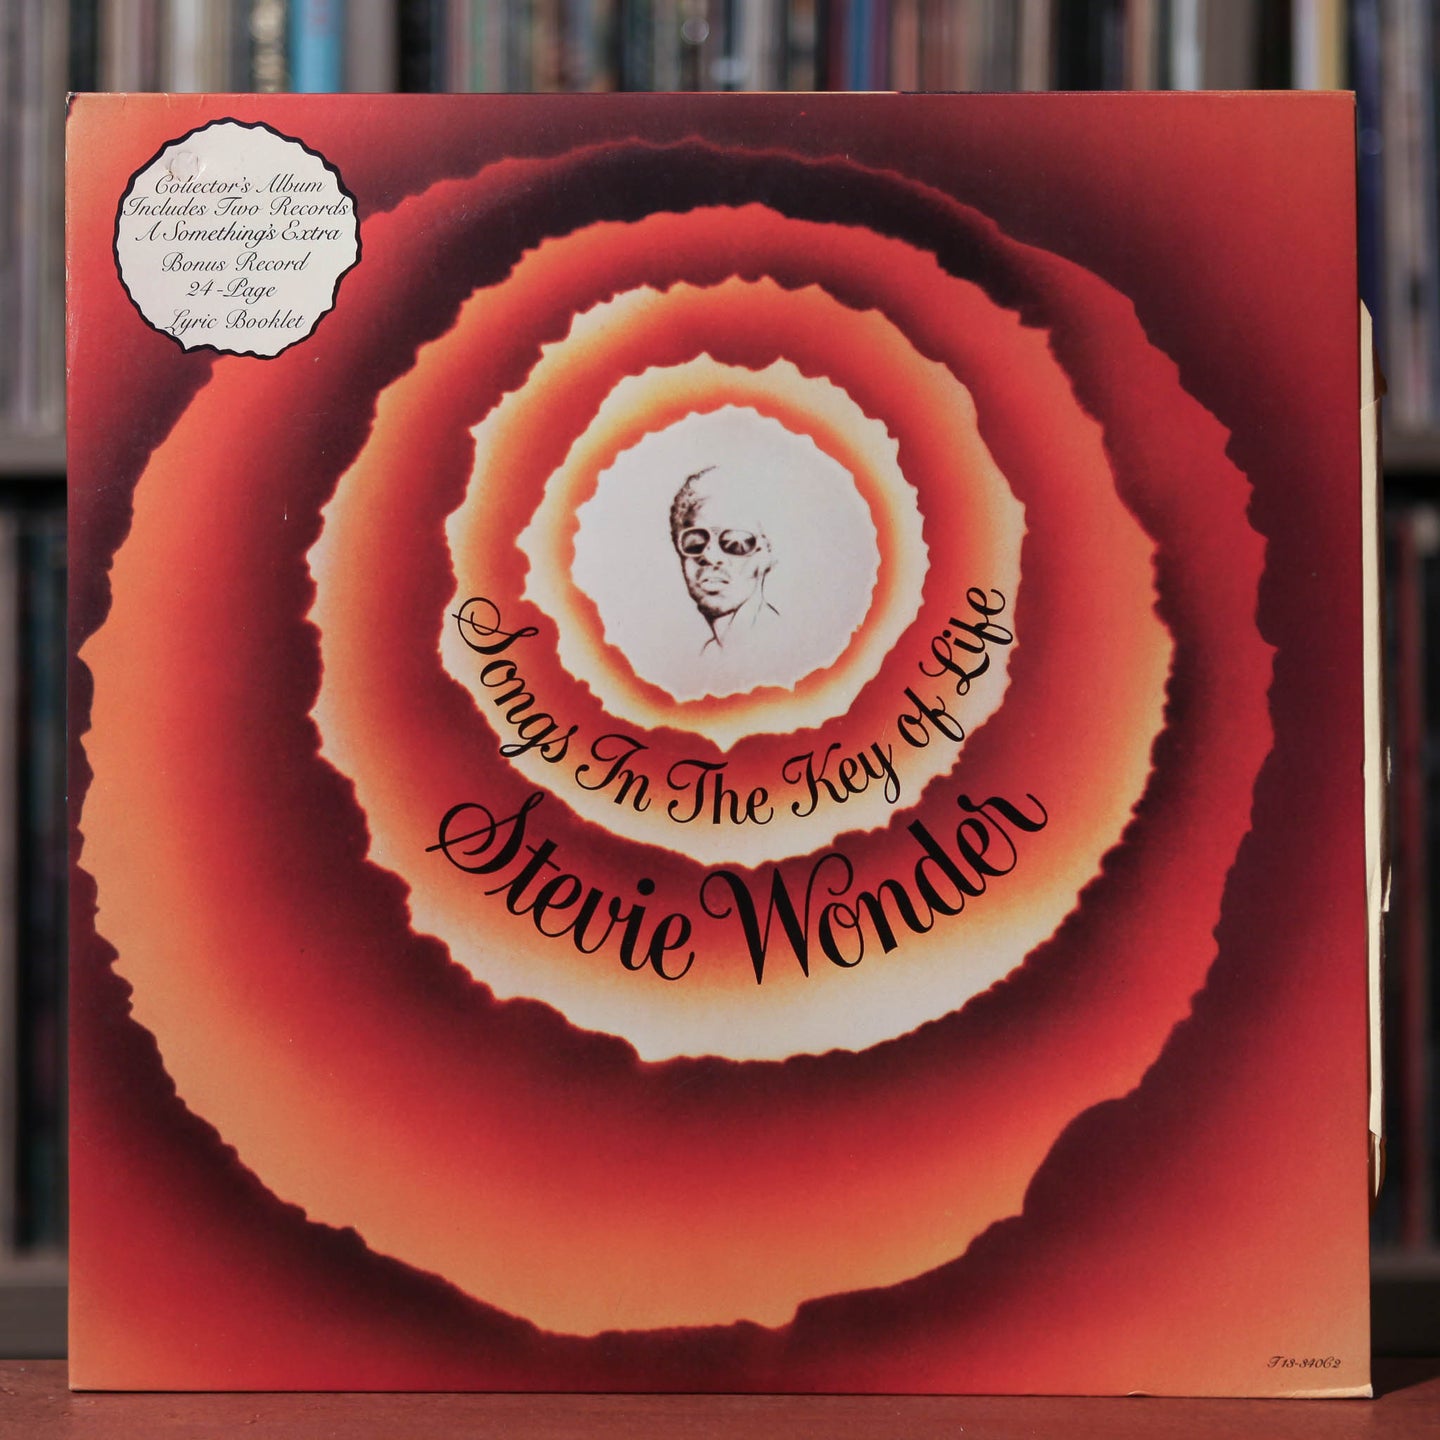 Stevie Wonder - Songs In The Key Of Life - 2LP - 1976 Tamla, EX/EX w/ 7